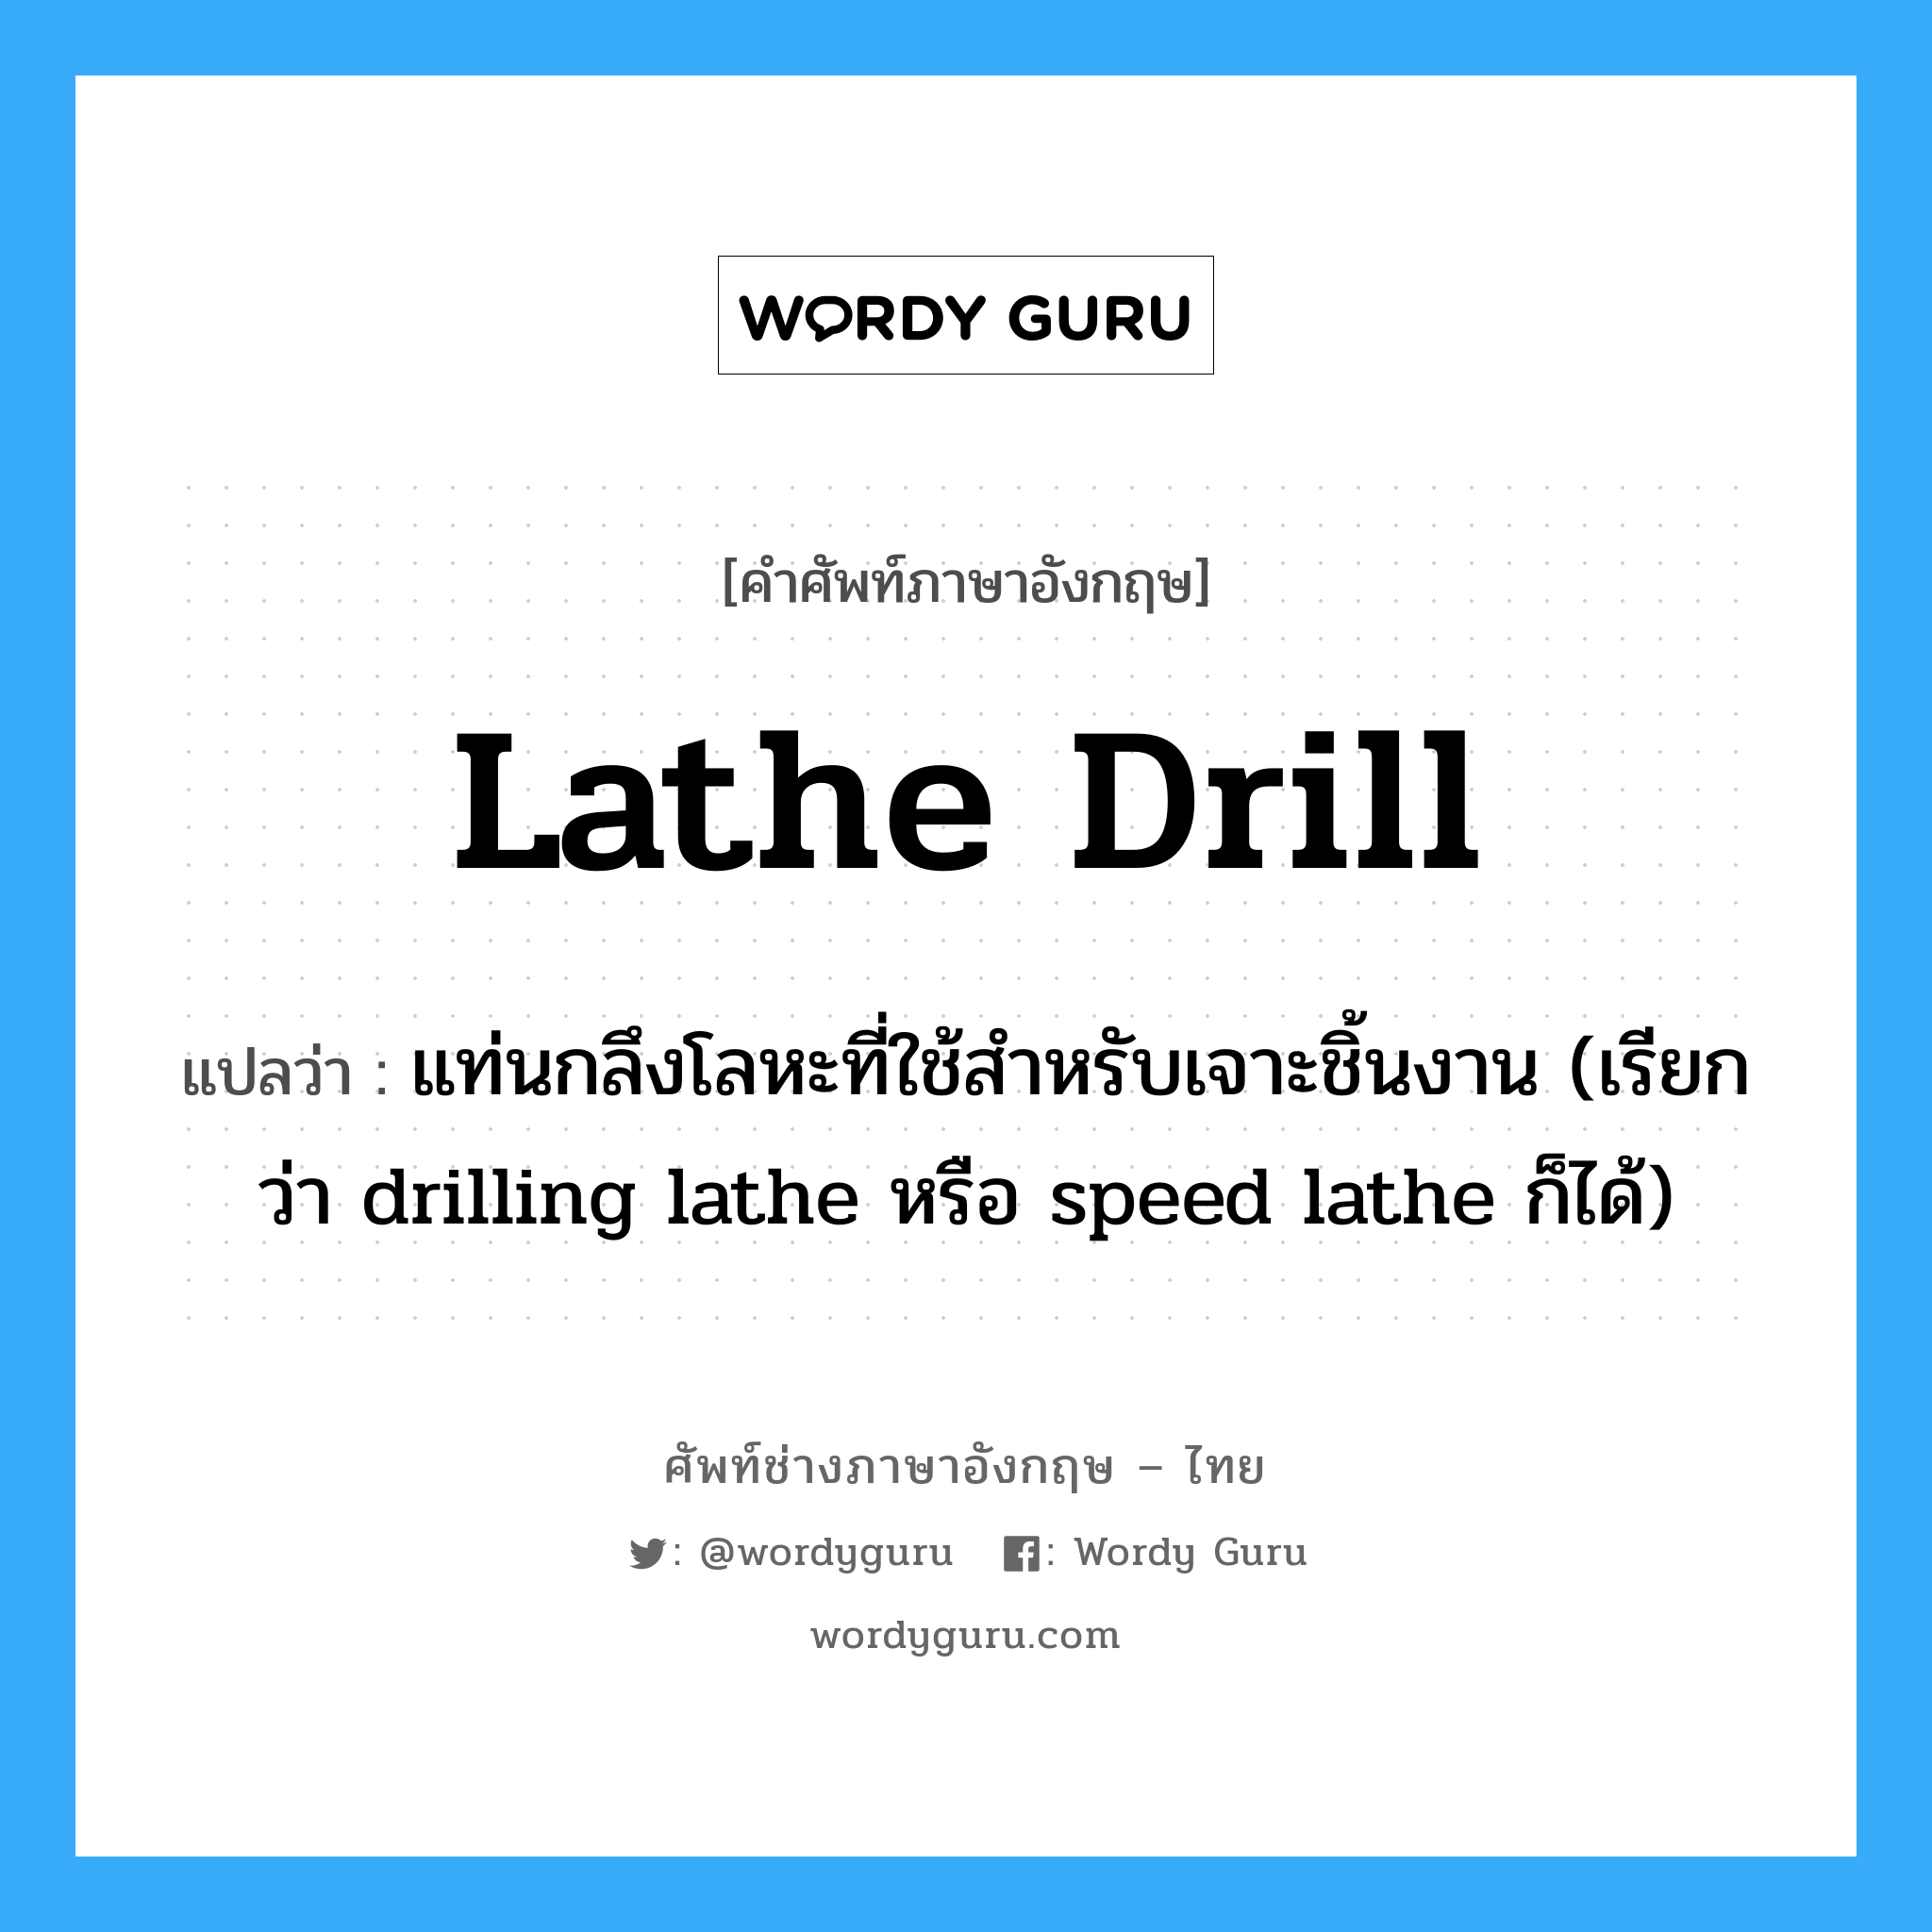 แท่นกลึงโลหะที่ใช้สำหรับเจาะชิ้นงาน (เรียกว่า drilling lathe หรือ speed lathe ก็ได้) ภาษาอังกฤษ?, คำศัพท์ช่างภาษาอังกฤษ - ไทย แท่นกลึงโลหะที่ใช้สำหรับเจาะชิ้นงาน (เรียกว่า drilling lathe หรือ speed lathe ก็ได้) คำศัพท์ภาษาอังกฤษ แท่นกลึงโลหะที่ใช้สำหรับเจาะชิ้นงาน (เรียกว่า drilling lathe หรือ speed lathe ก็ได้) แปลว่า lathe drill